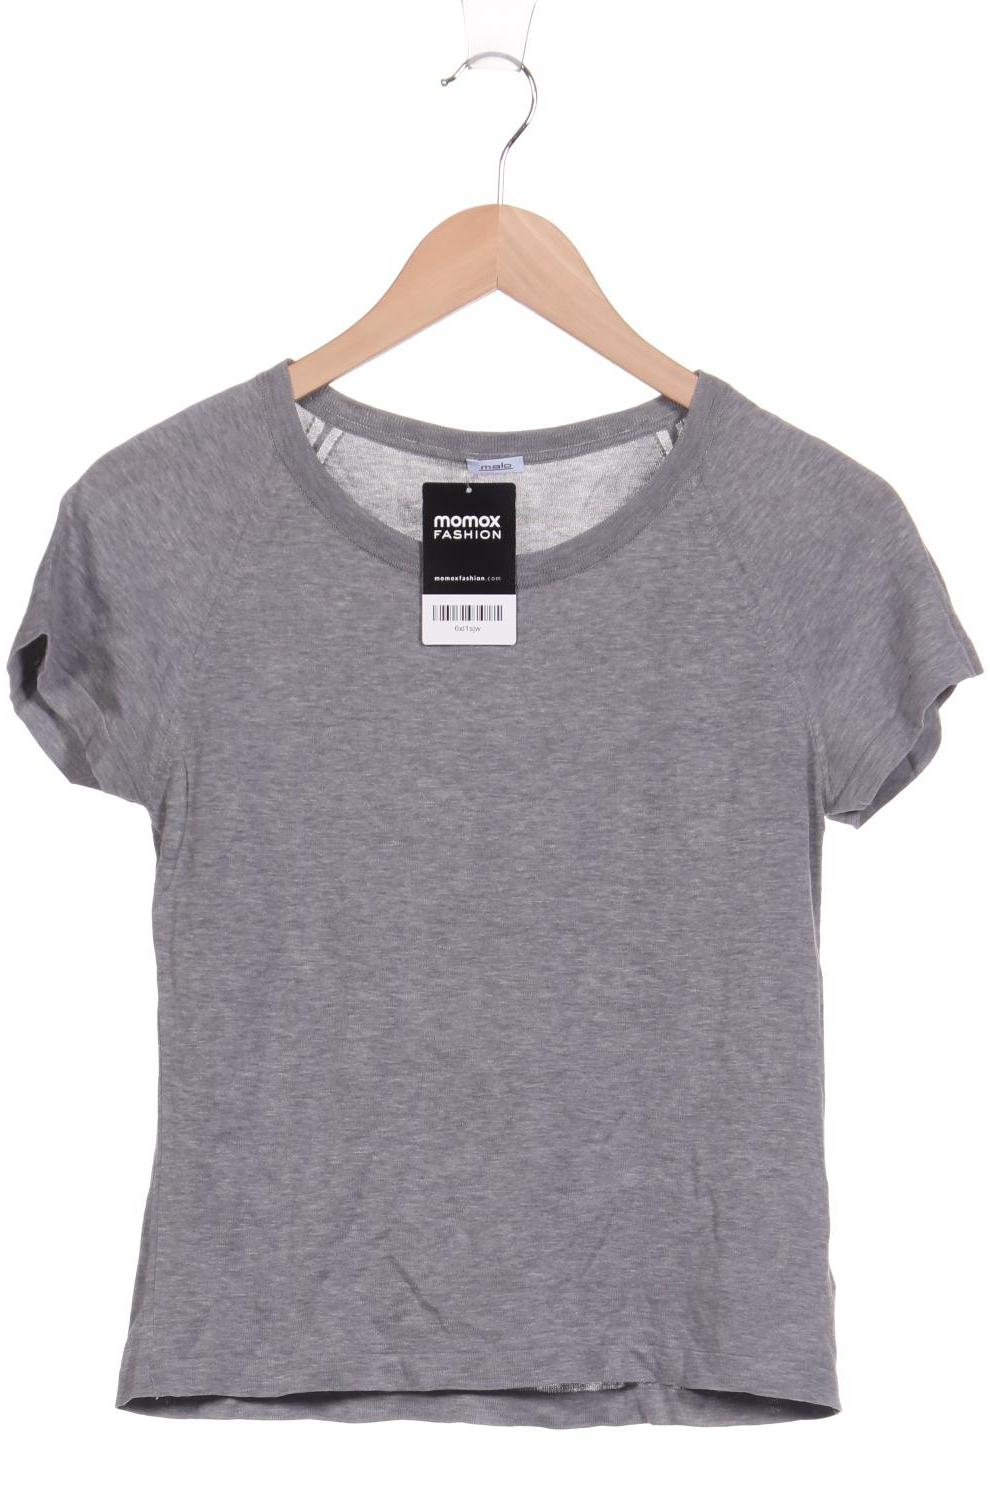 Malo Damen T-Shirt, grau, Gr. 34 von Malo